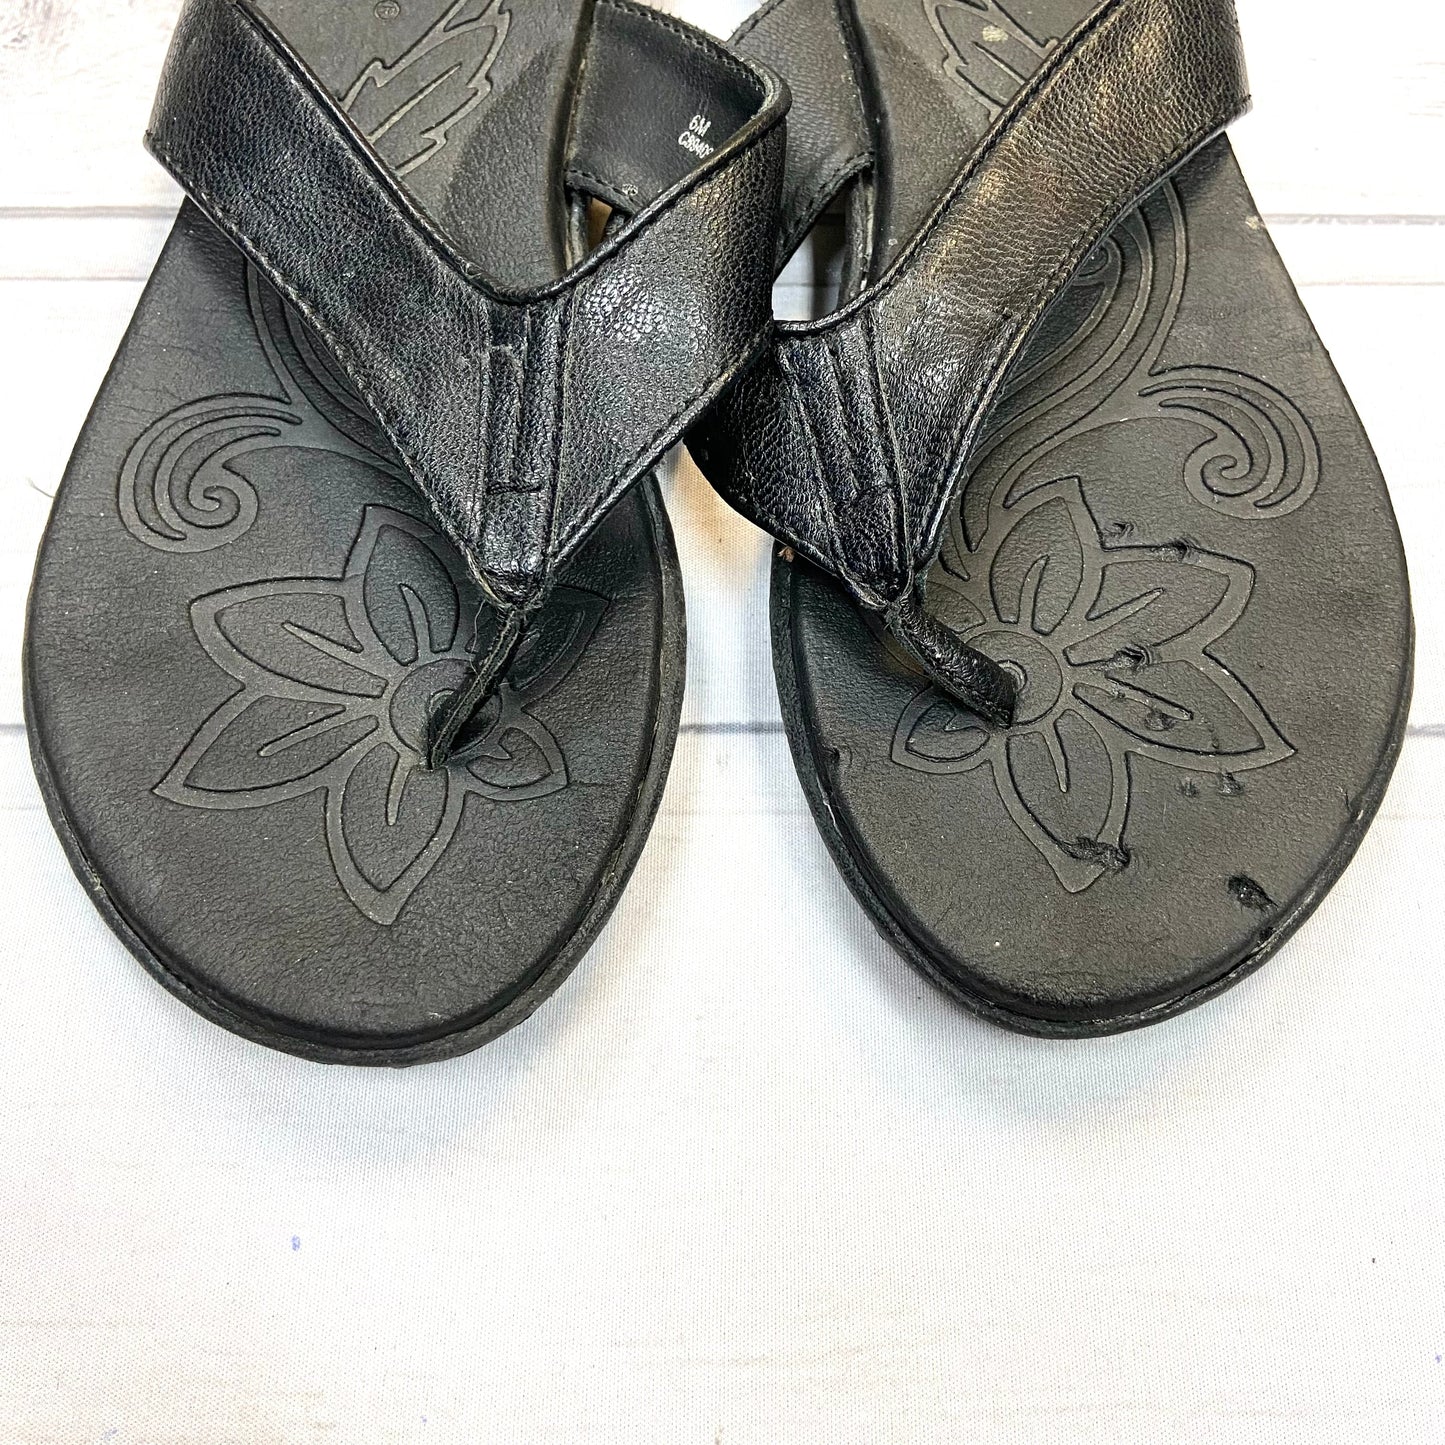 Sandals Flip Flops By Boc  Size: 6